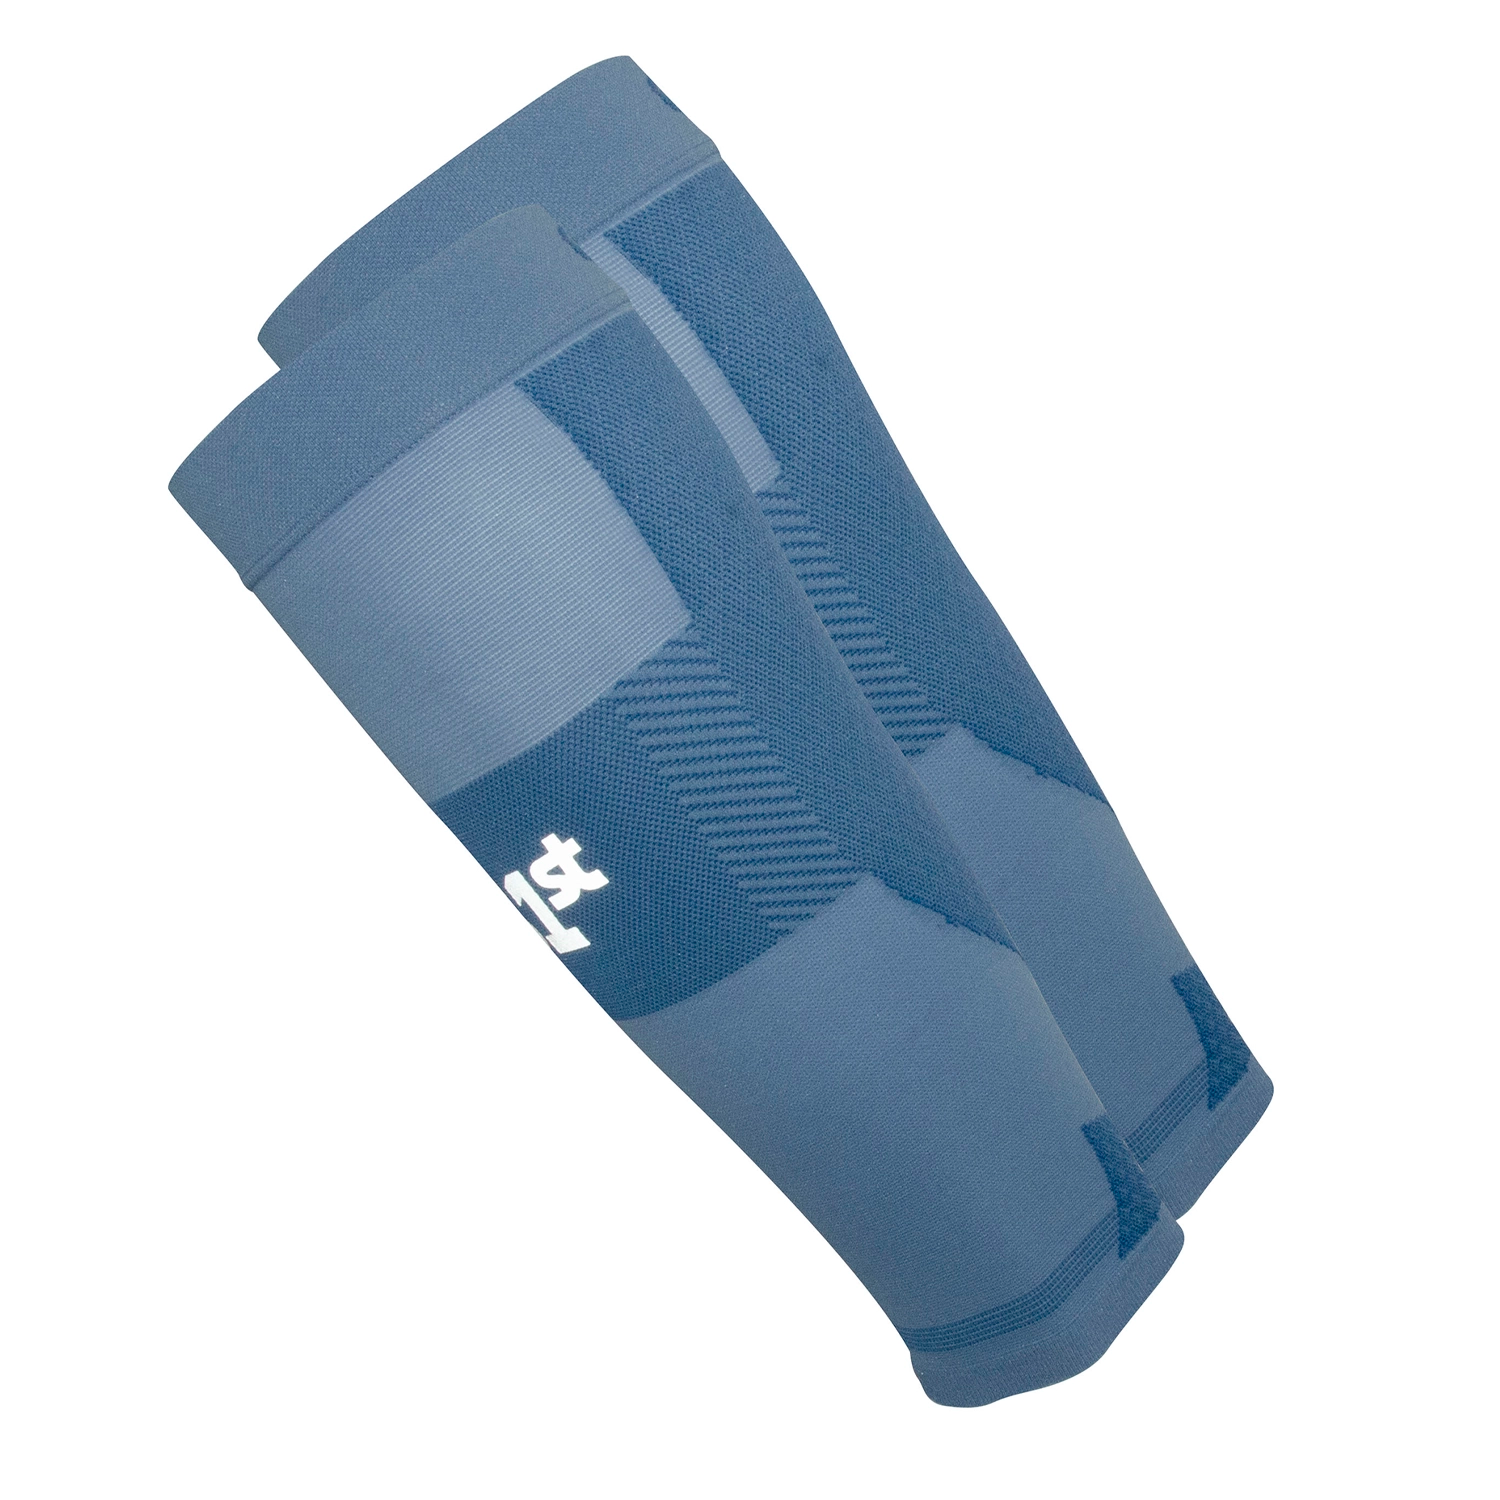 TA6 Thin air calf sleeves in steel blue | OS1st